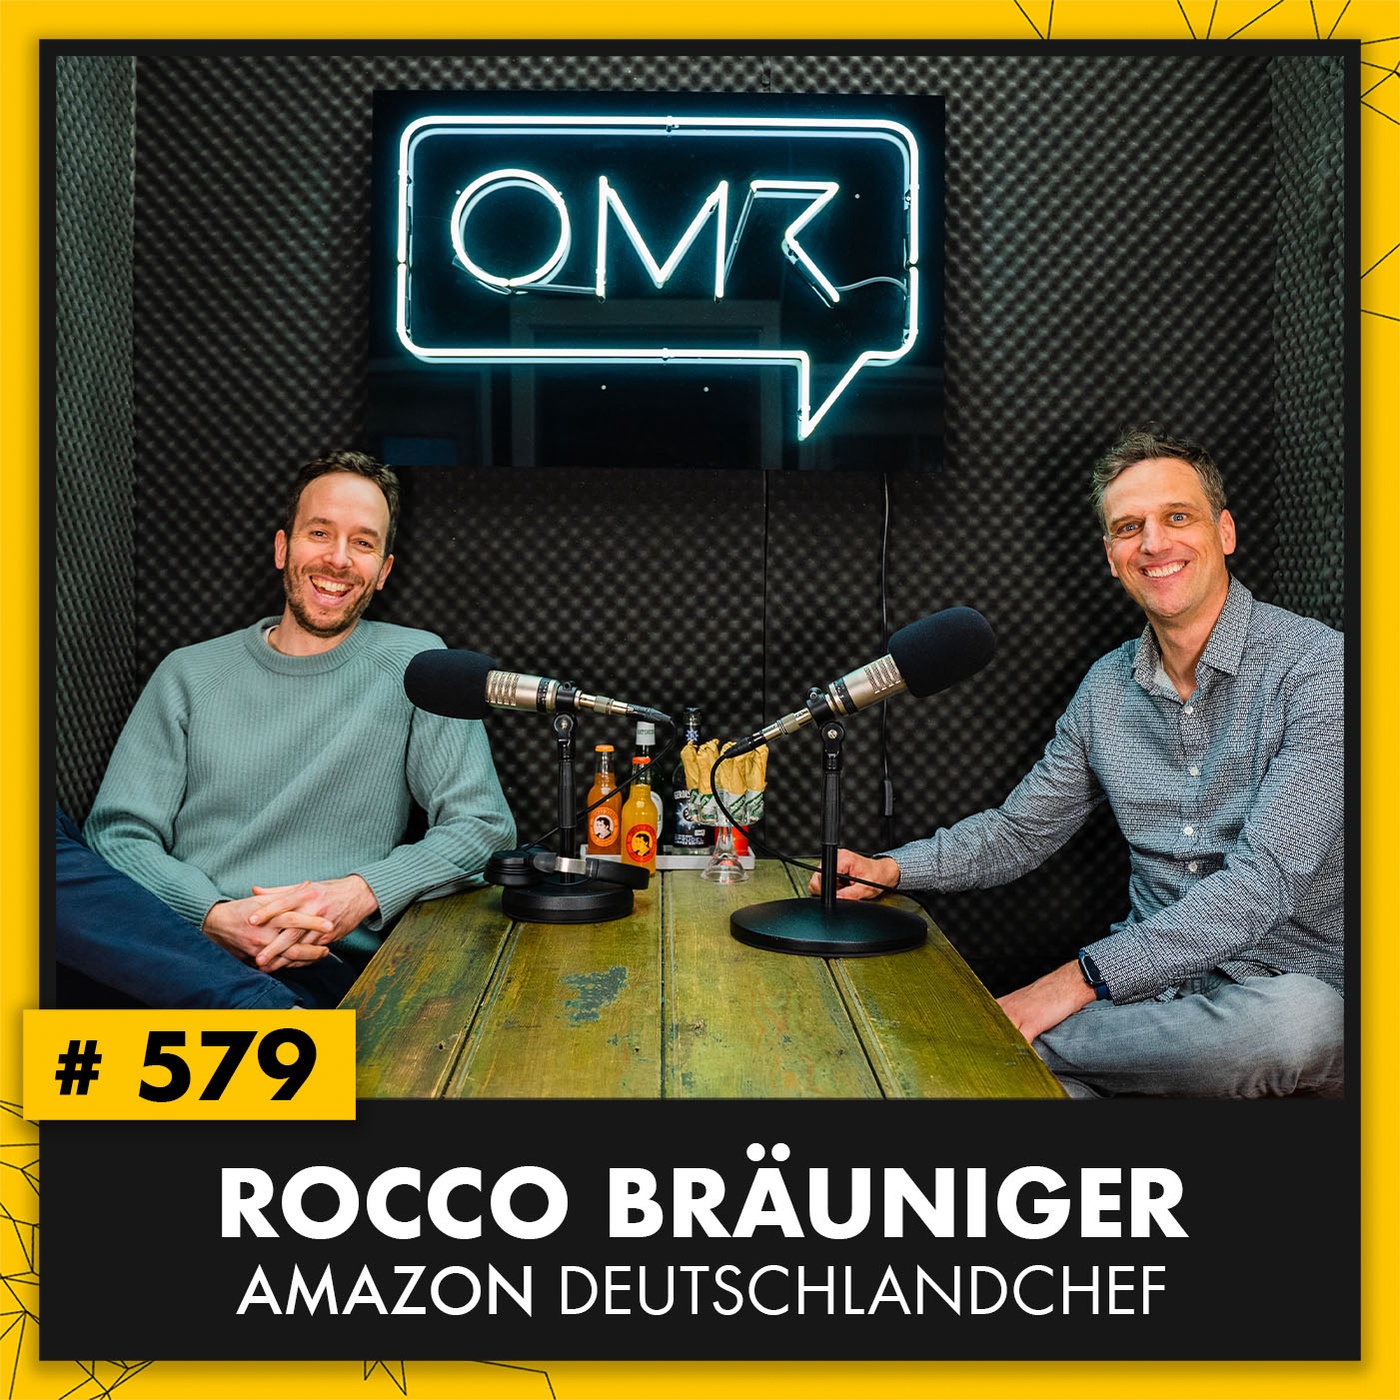 OMR #579 mit Amazon-Deutschlandchef Rocco Bräuniger